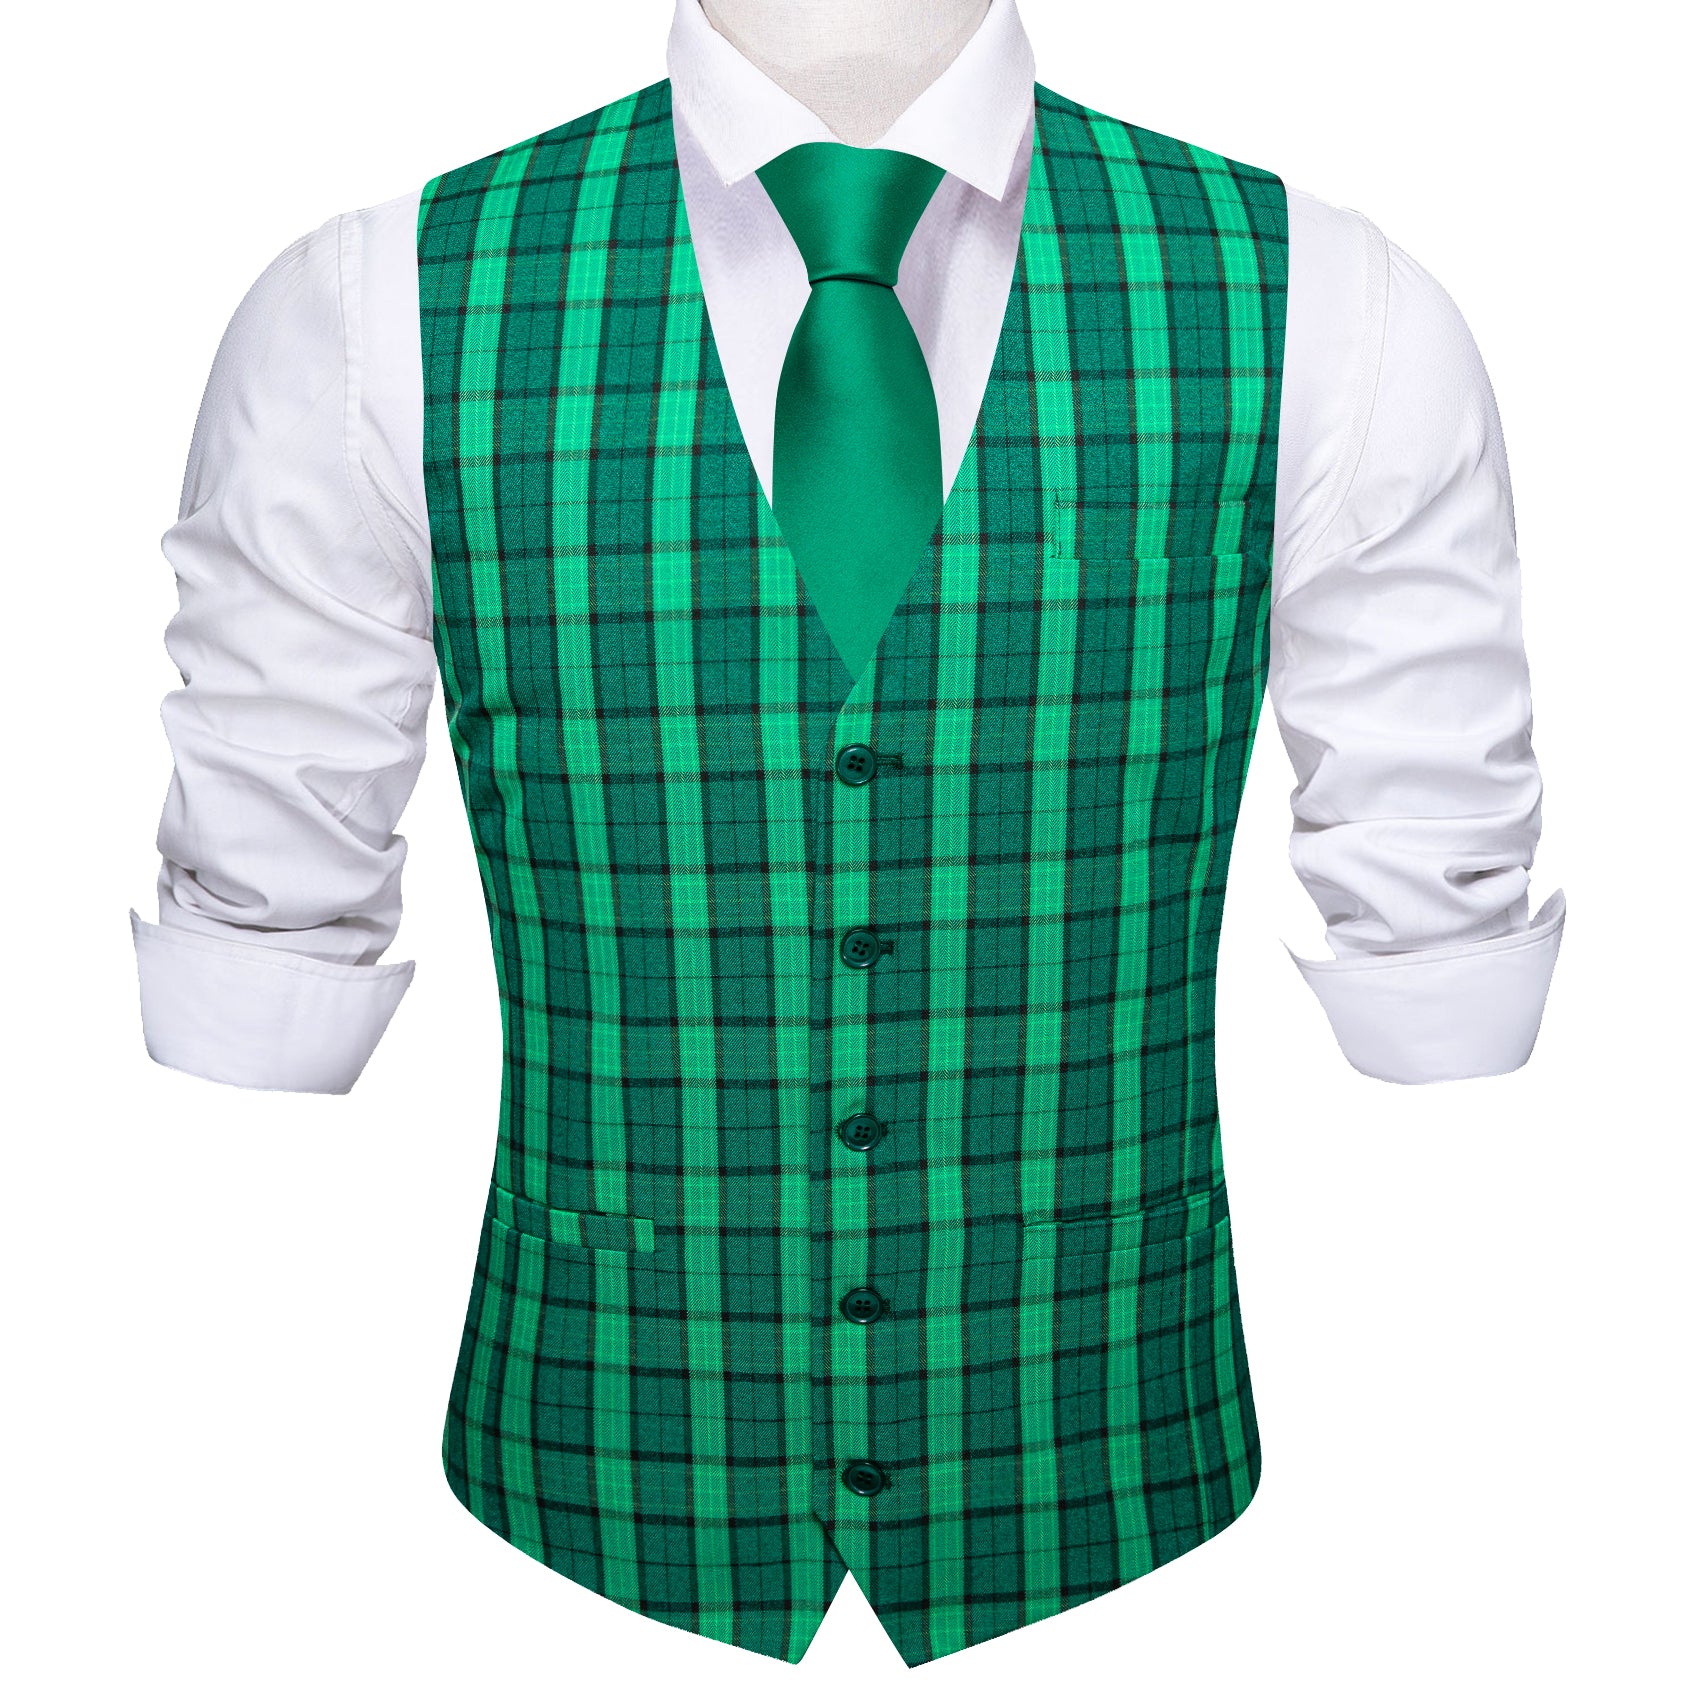 Barry.wang Green Plaid Vest Waistcoat Set